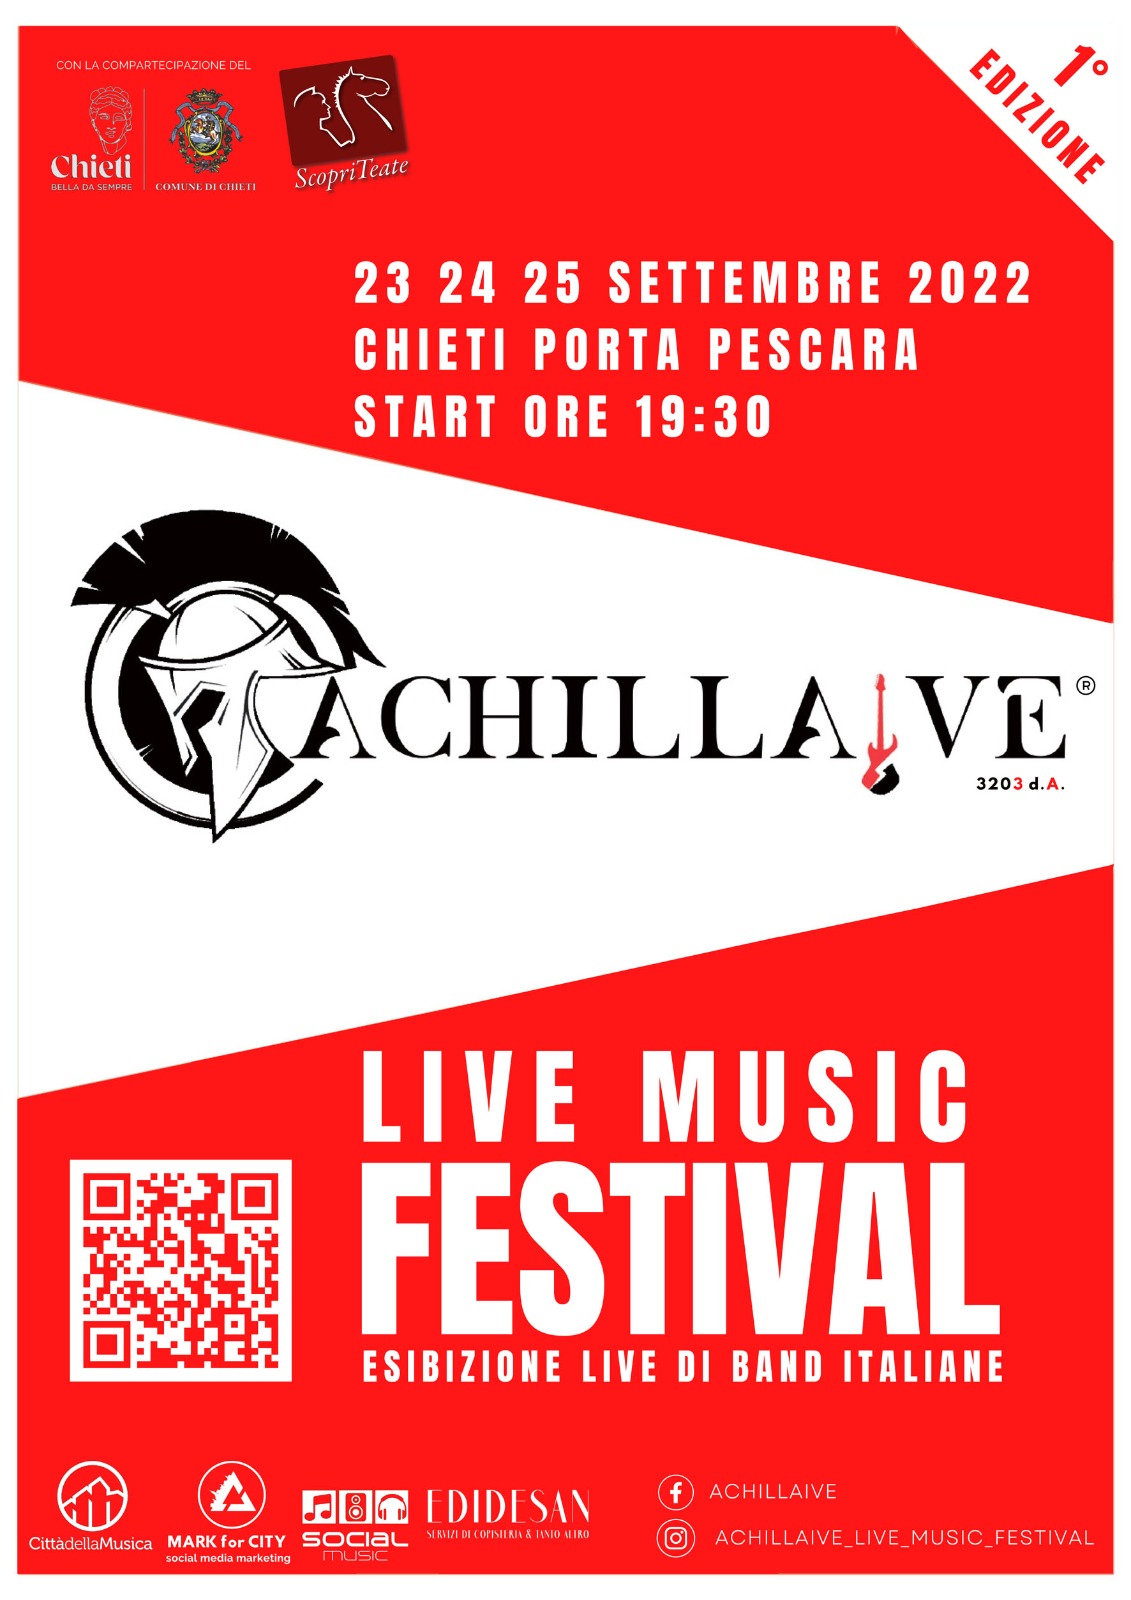 Immagine raffigurante notizia - Al via la prima edizione di Achillaive, contest per band provenienti da tutta Italia